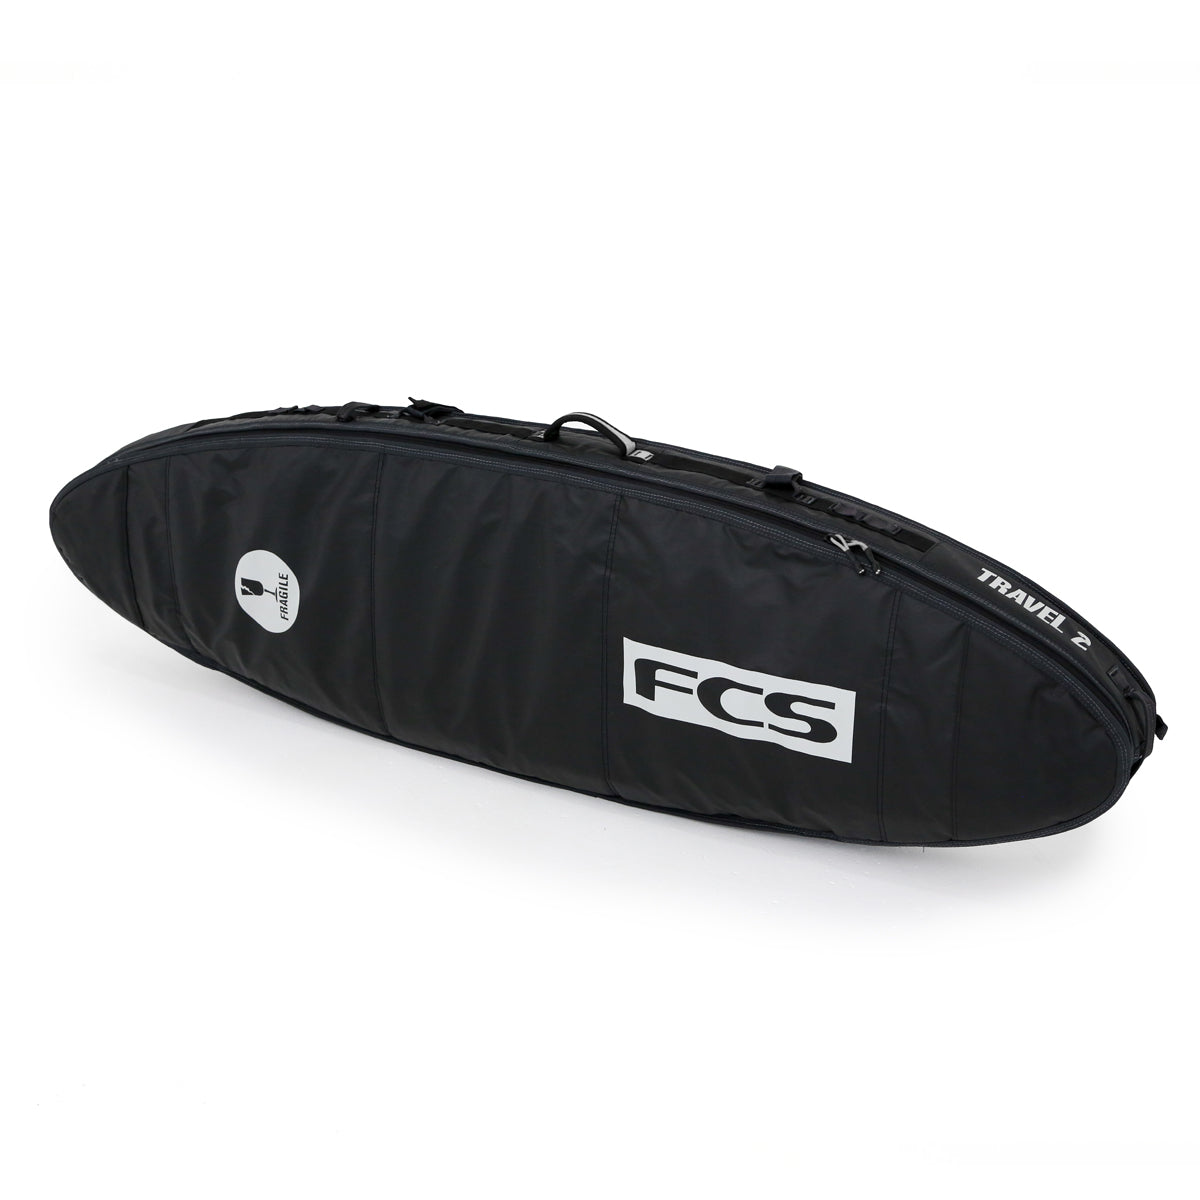 FCS Travel 2 All Purpose 6ft 7 Surf Bag - Black/Grey